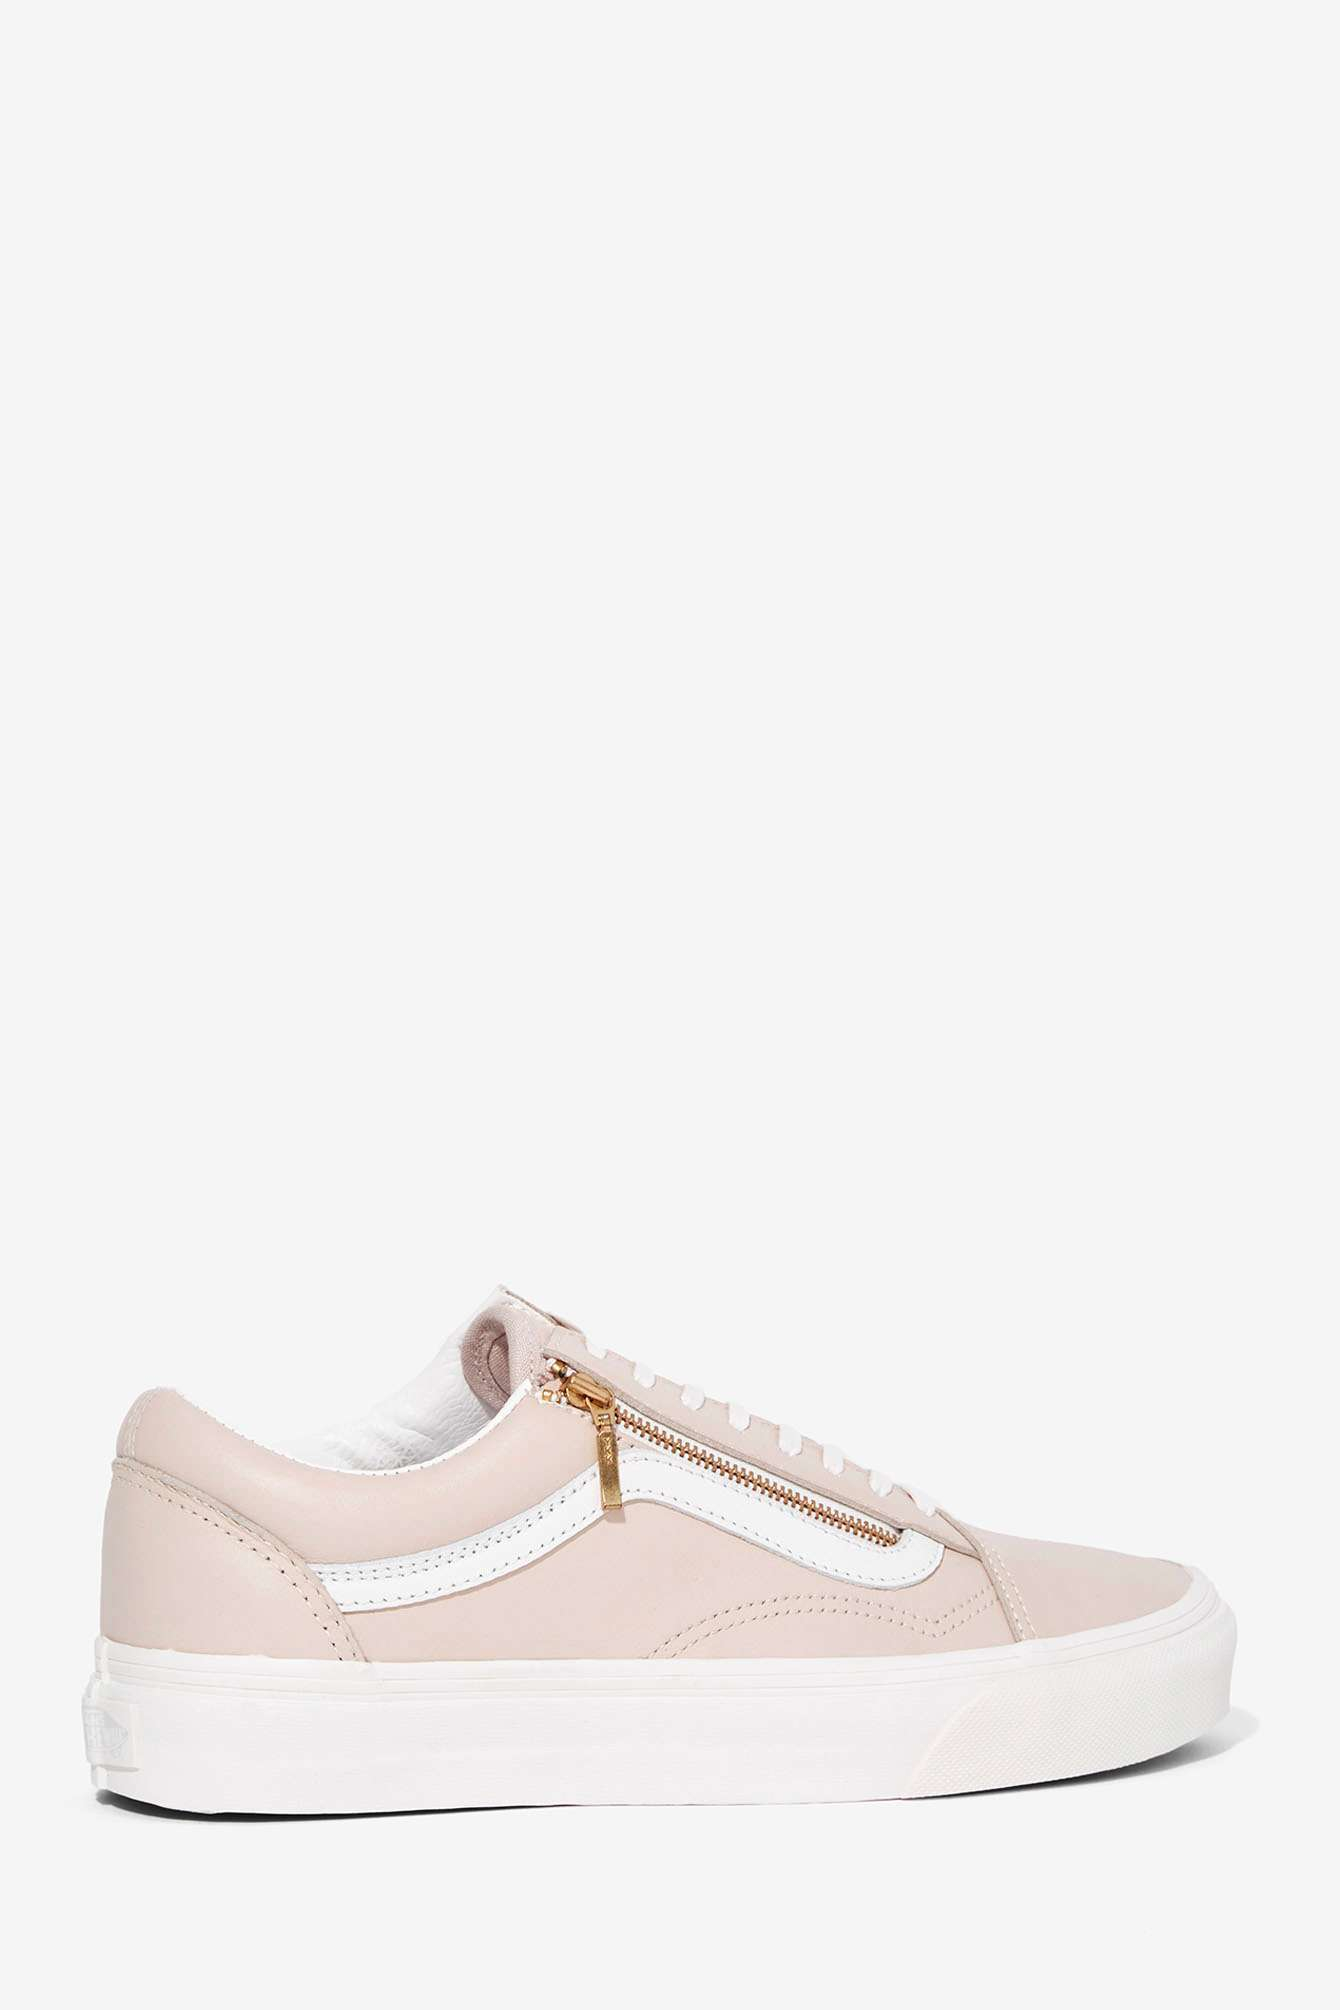 Vans Old Skool Zip Leather Sneaker in Pink - Lyst